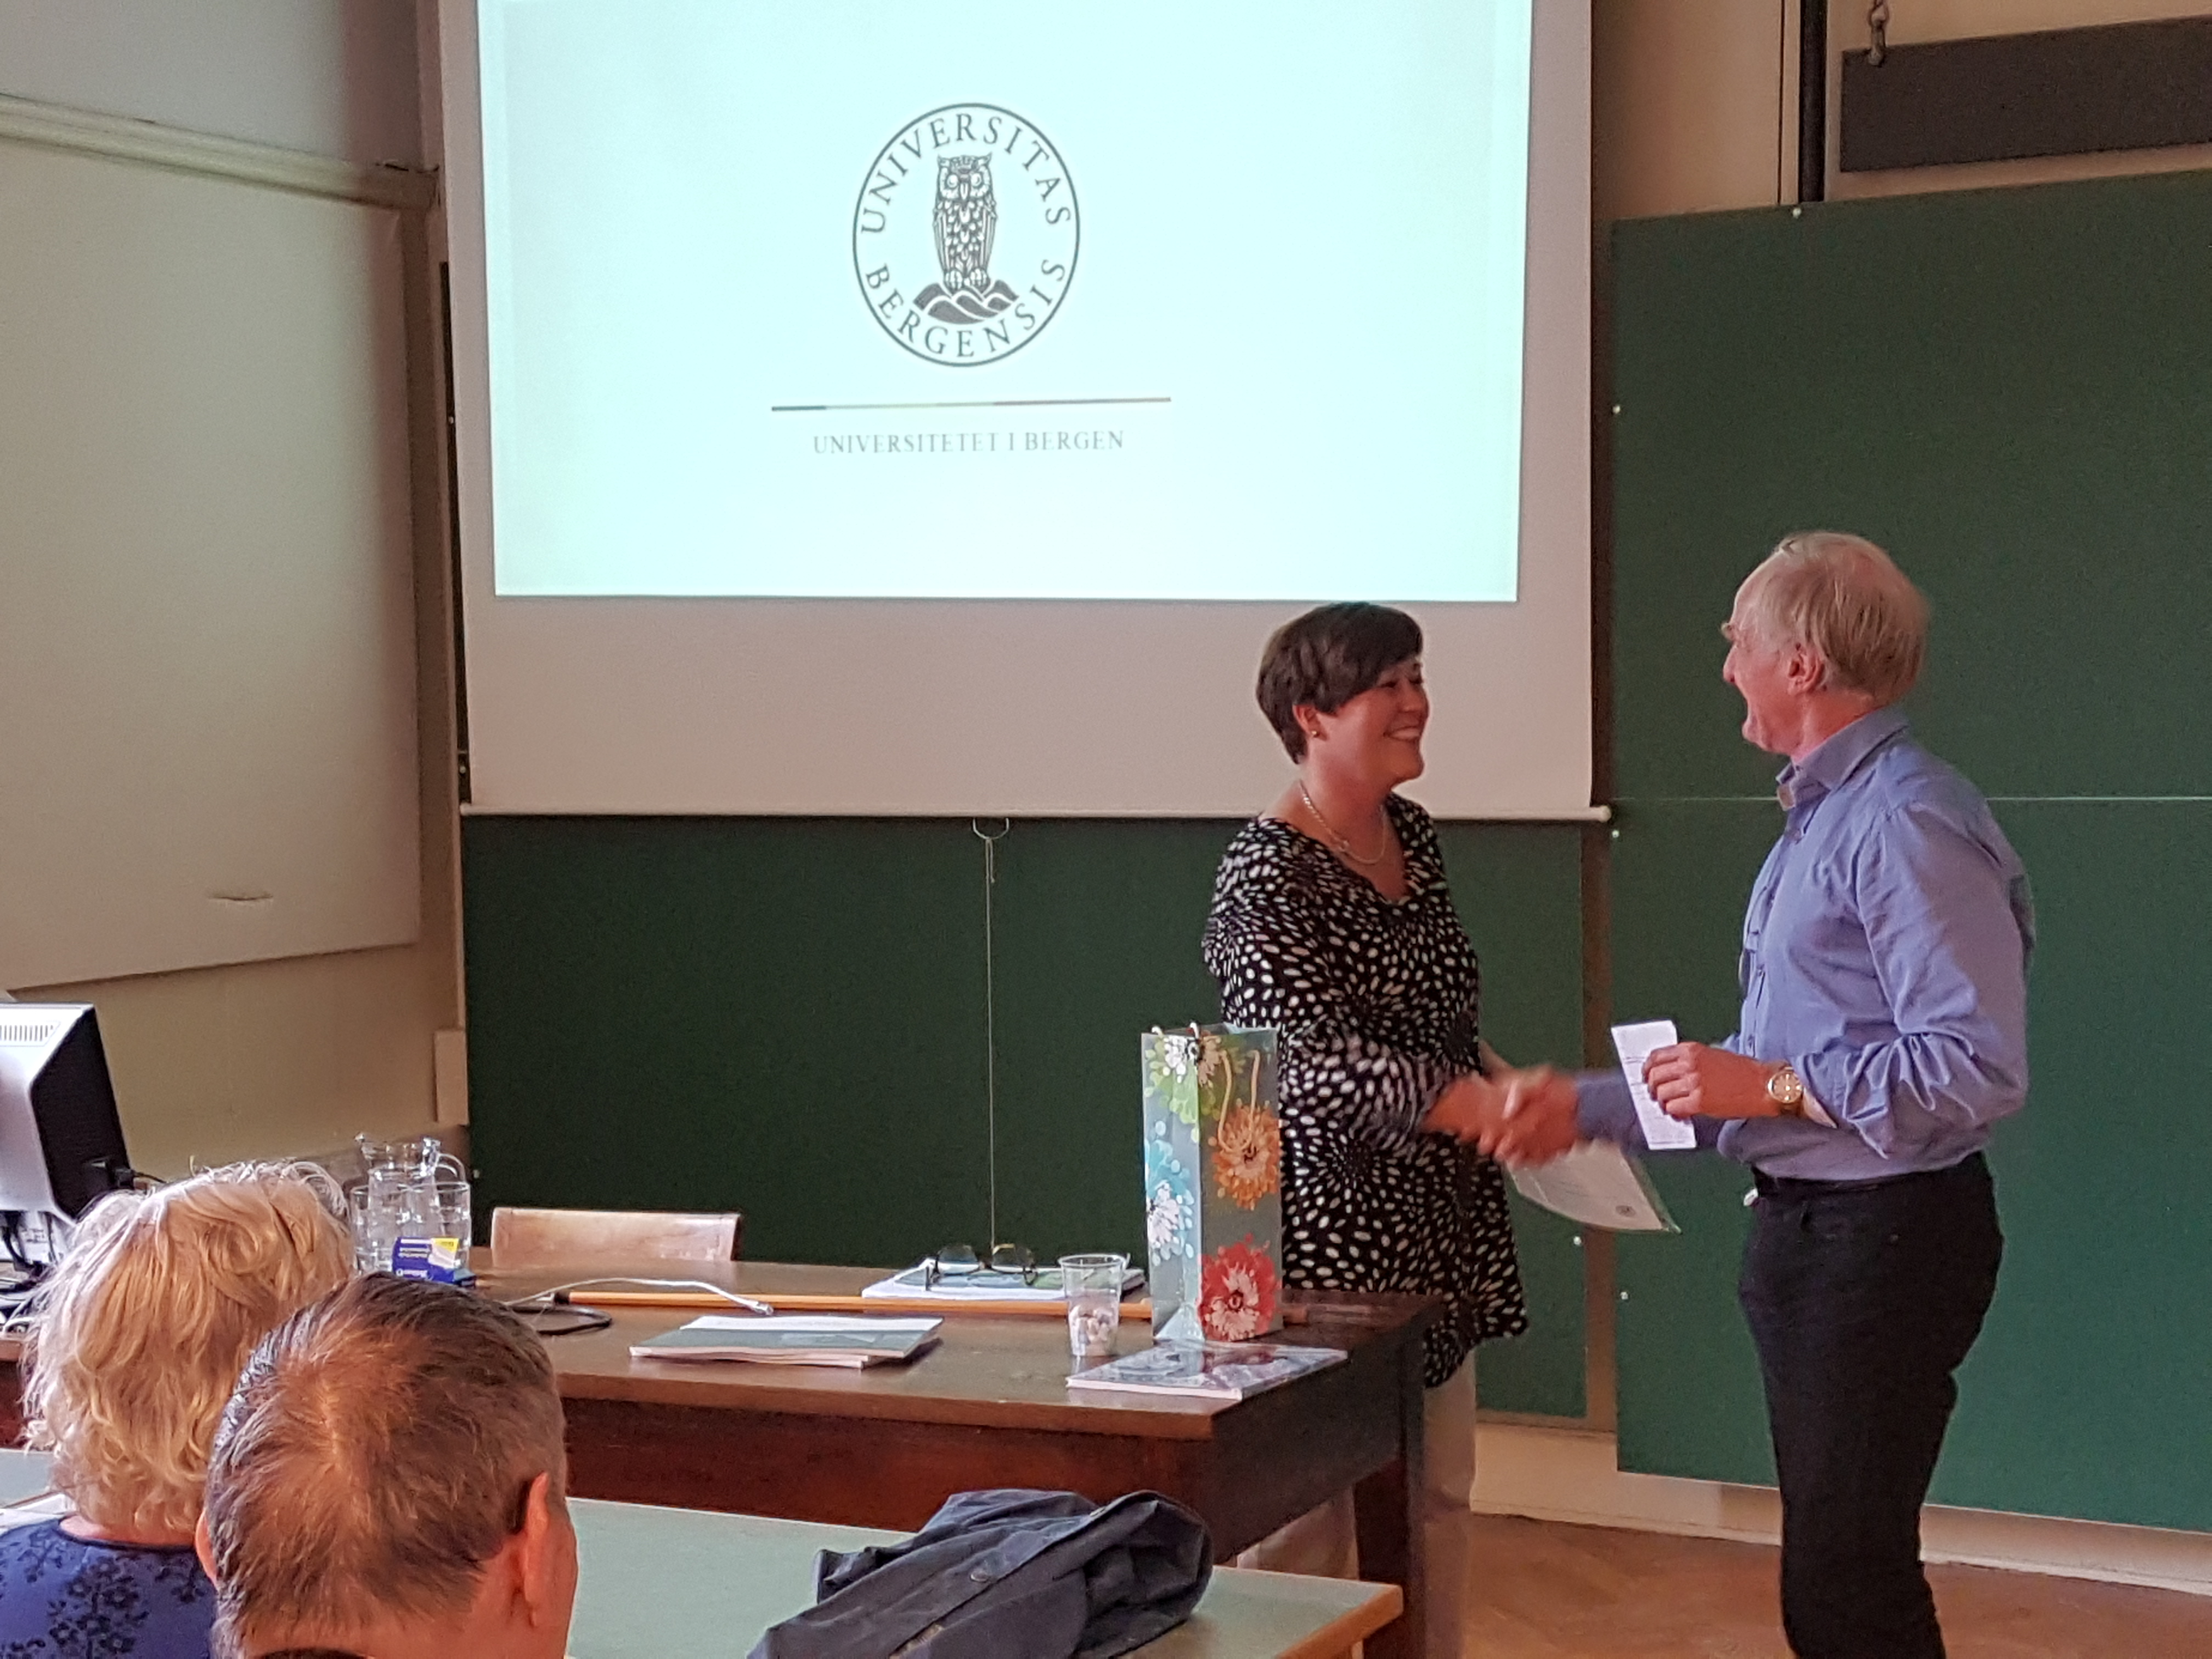 Preses Finn Gunnar Nielsen takker Åse Tveitnes for et godt innlegg om fredning og restaurering av Geofysen og andre universitetsbygg.